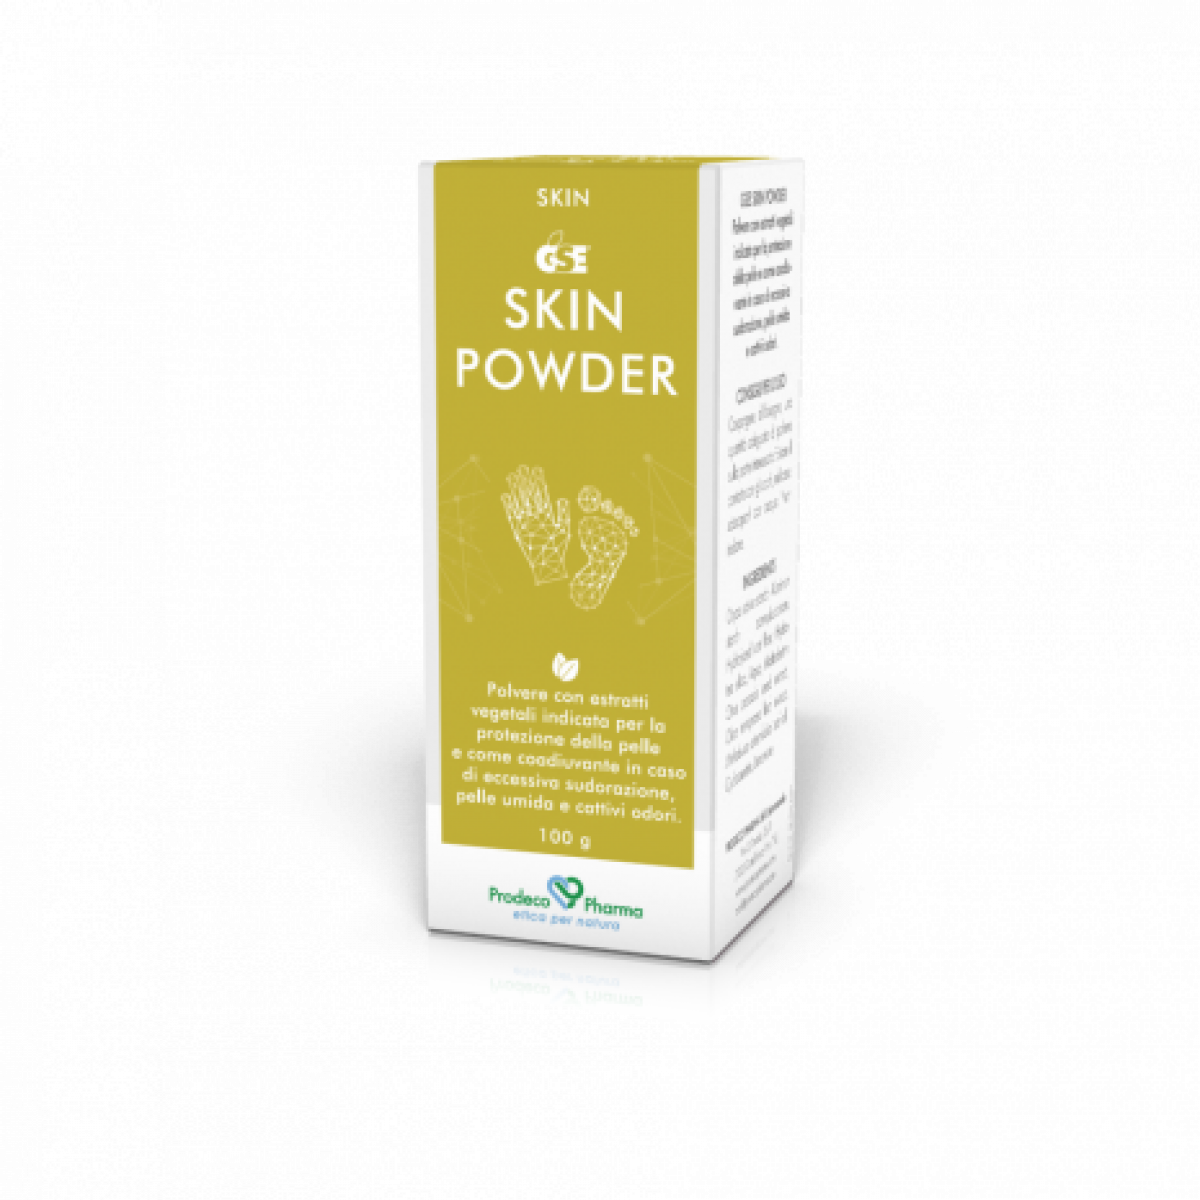 GSE Skin Powder - Prodeco Pharma GSE Skin Powder è una polvere dermatologica ad azione naturale, a base di Estratto di semi di Pompelmo, utile in caso di dermatiti, eritemi da pannolini, piaghe, ustioni, micosi. Flacone da 100 g con tappo spargipolvere.